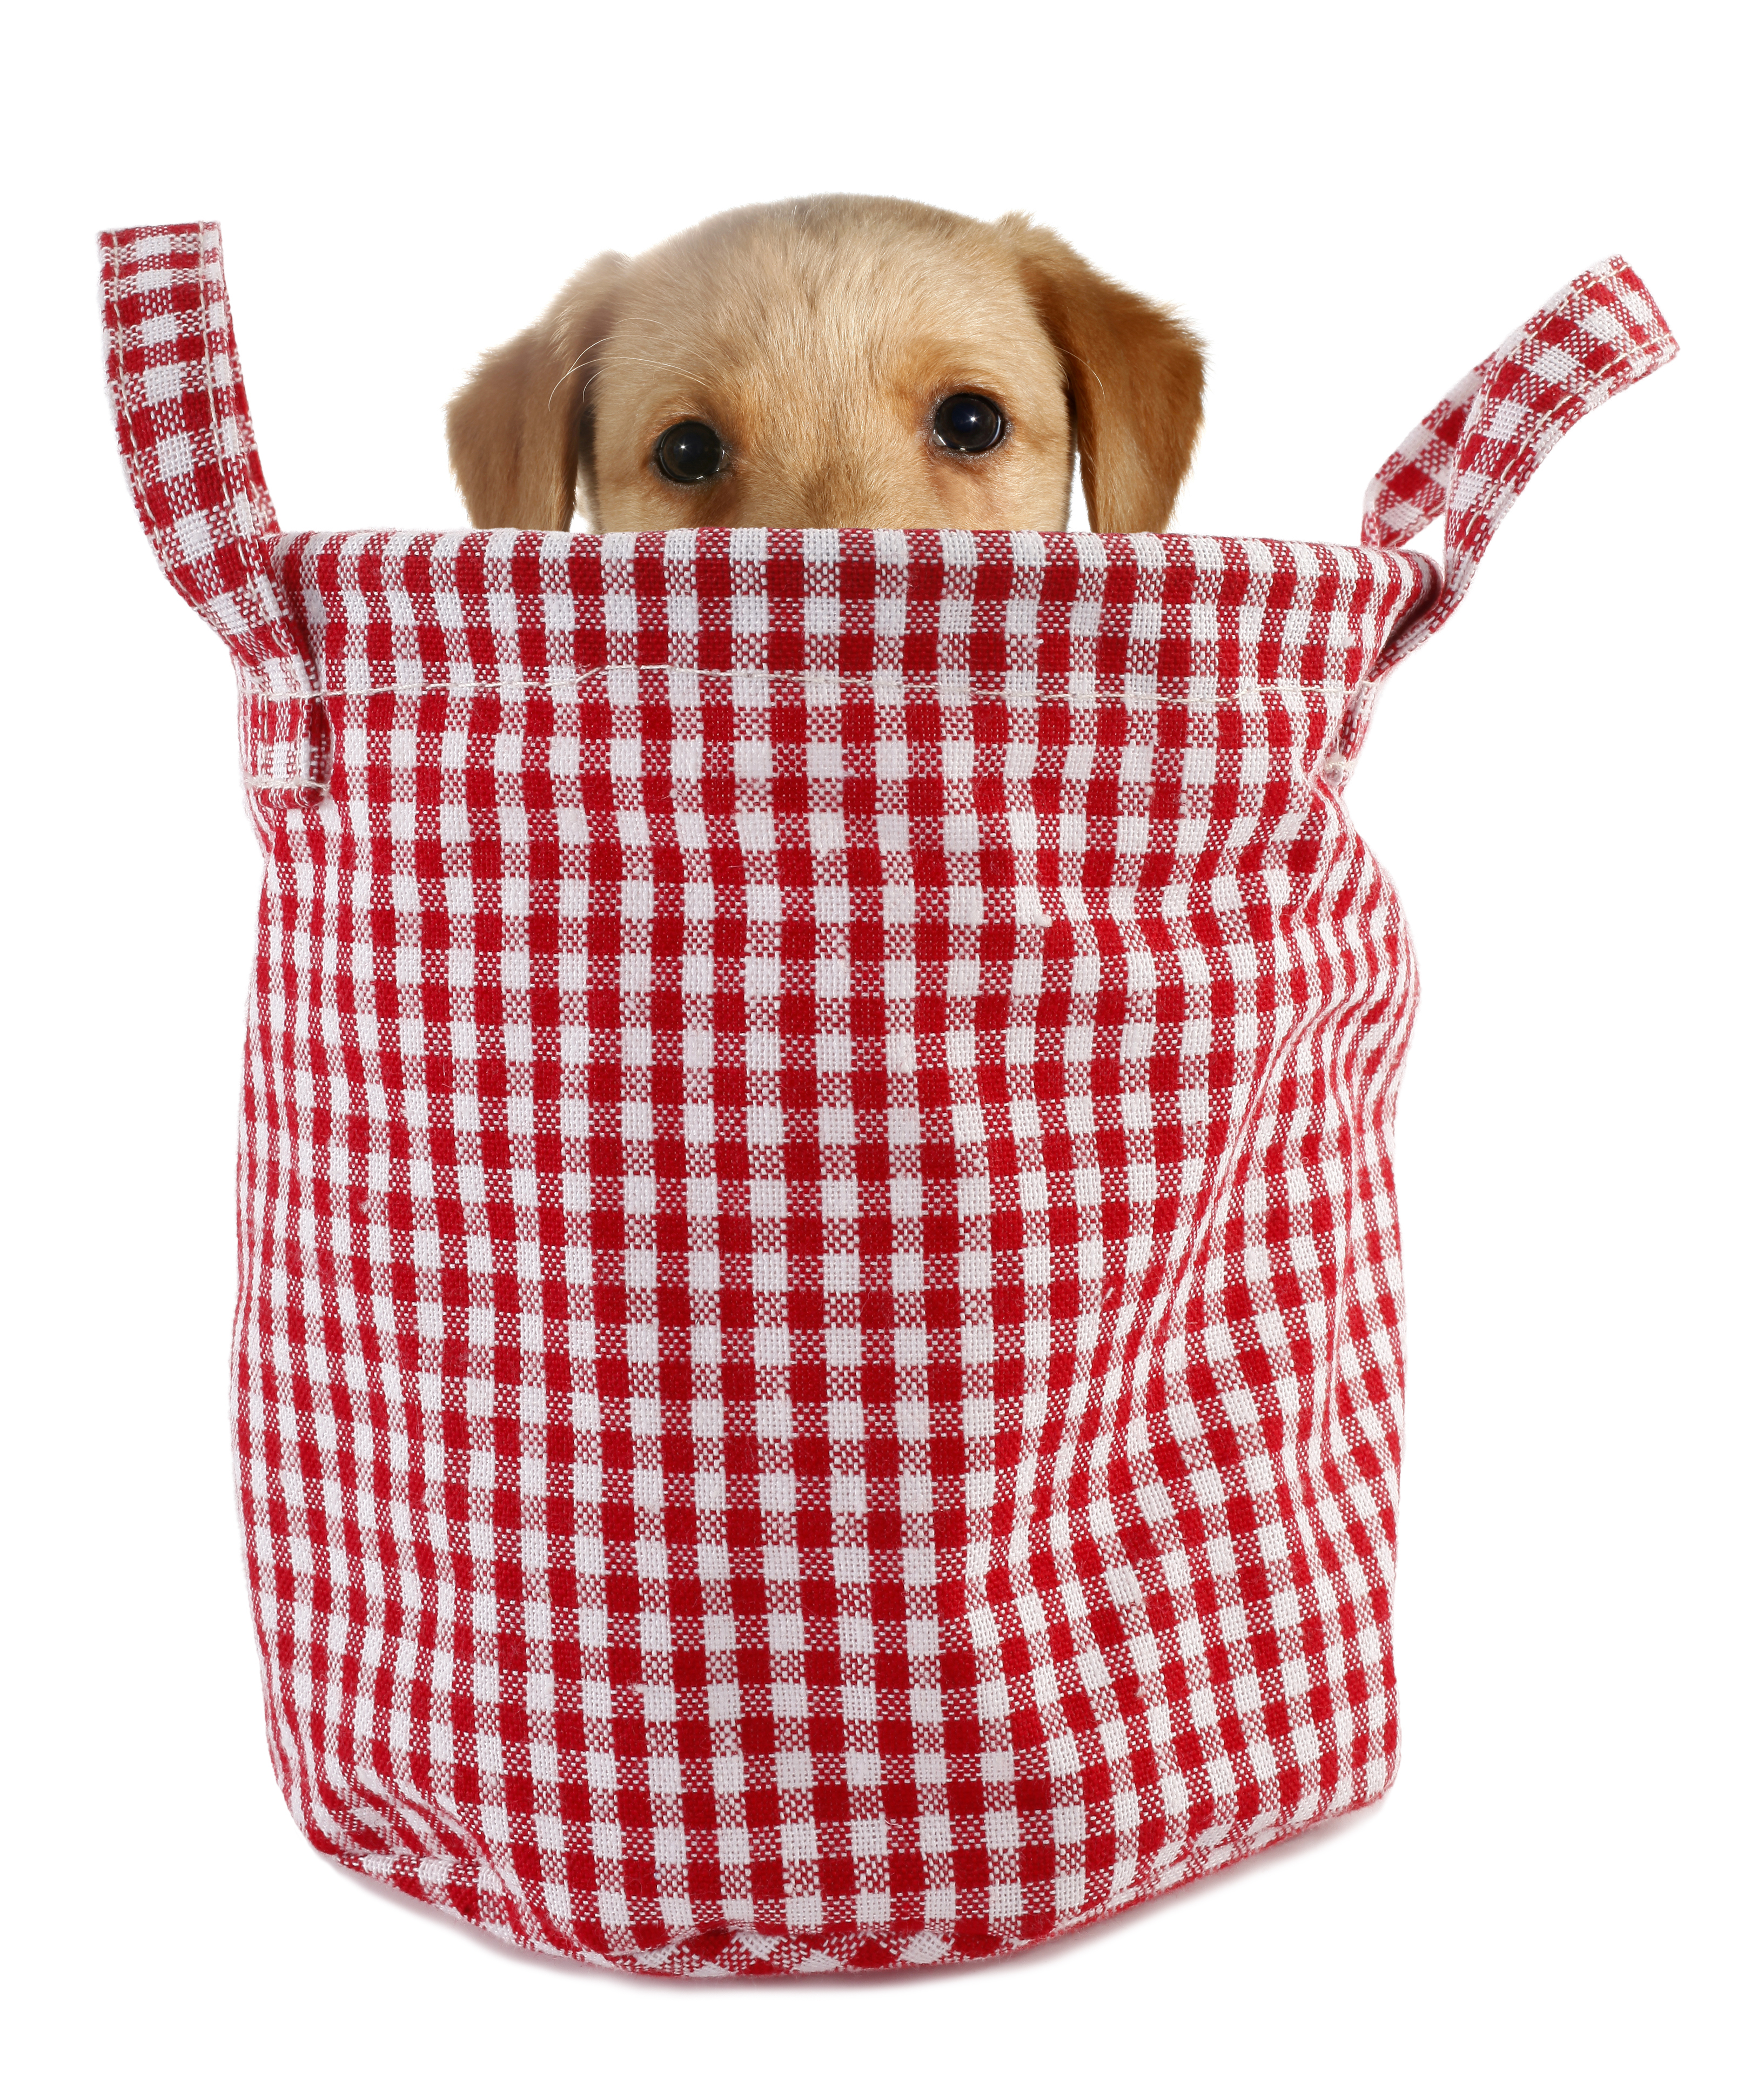 Puppy Culture Tote Bag – PUPPY CULTURE